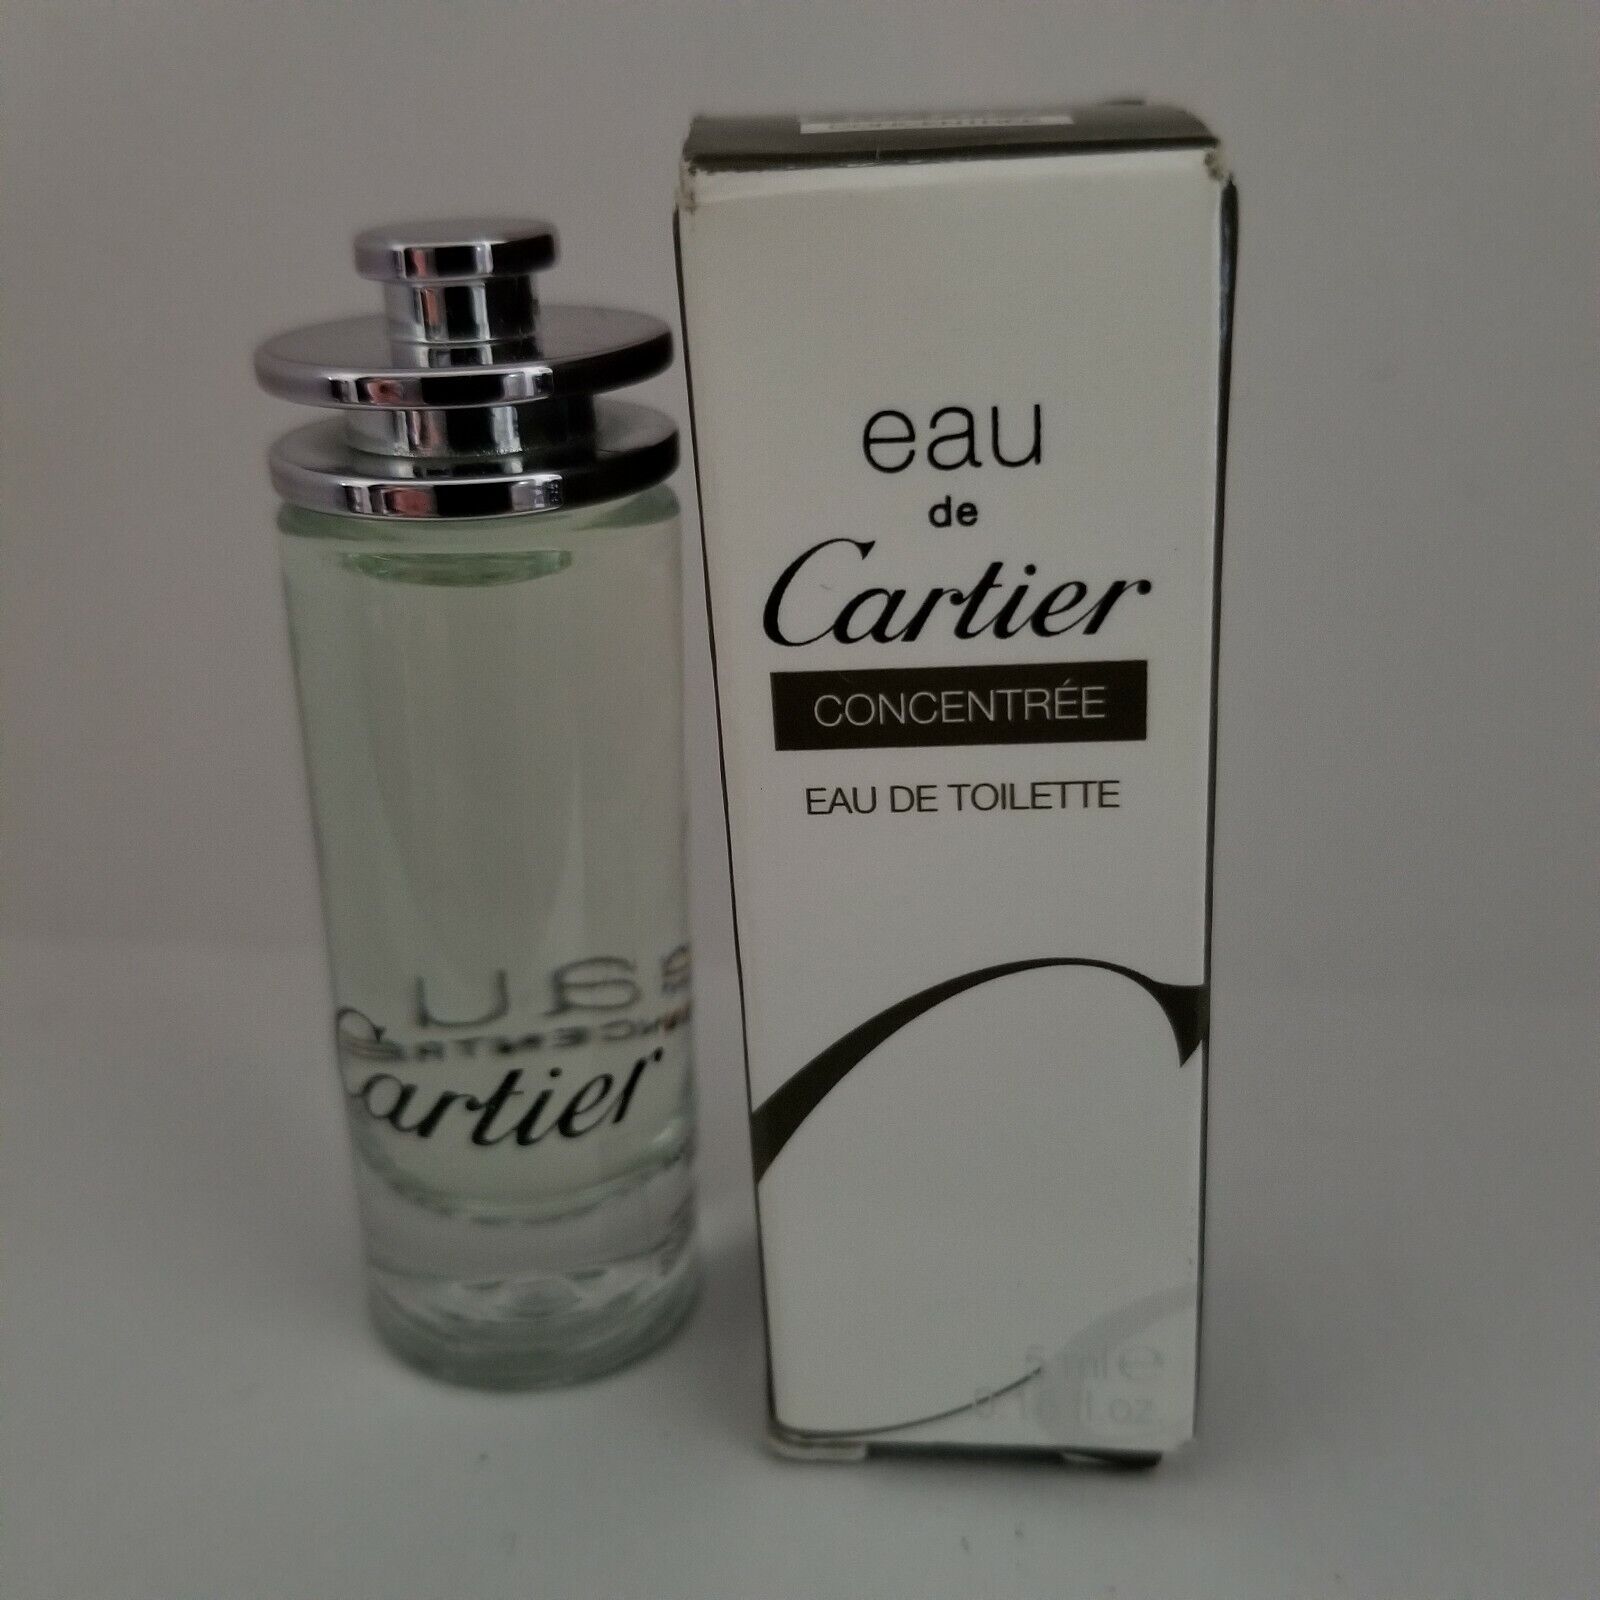 Cartier Eau De Cartier Concentree, edt 5ml